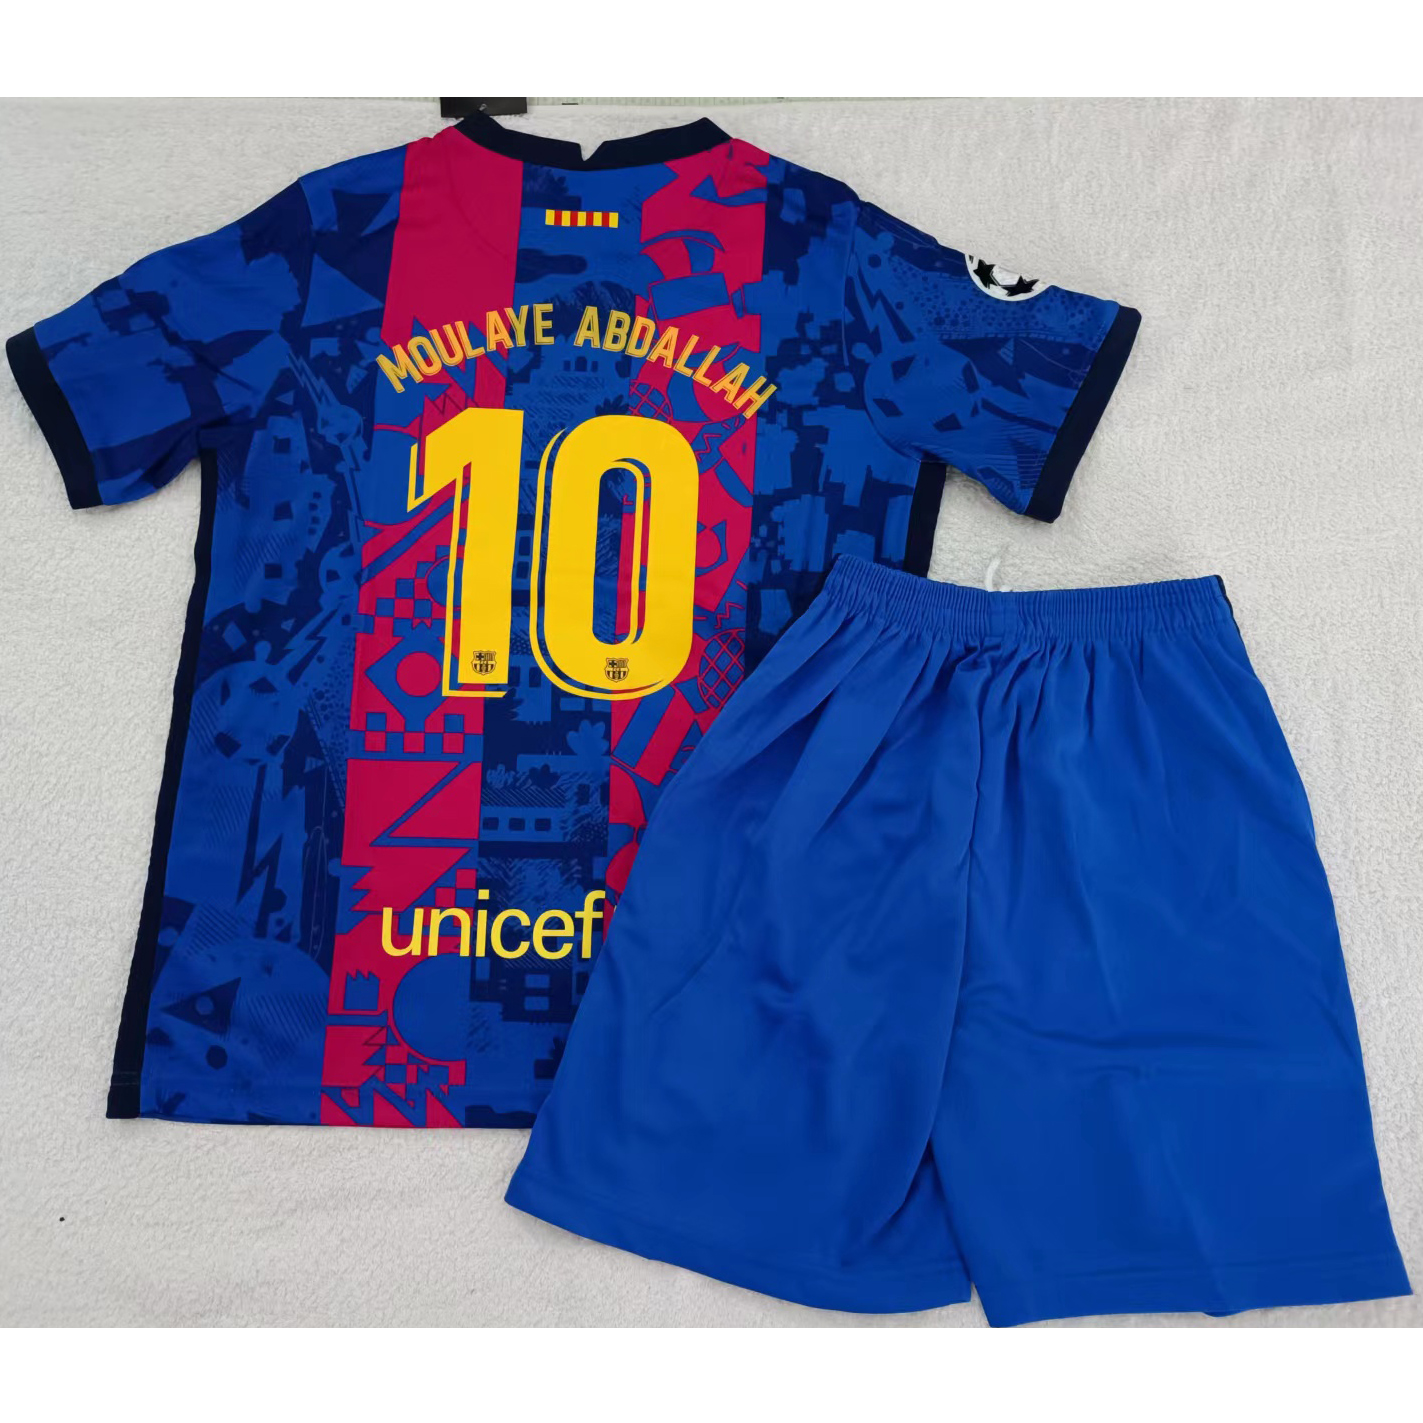 max maillots produits à prix réduits 2302140 Enfant Barcelone MOULAYE ABDALLAH 10 Taille 26 Bleu